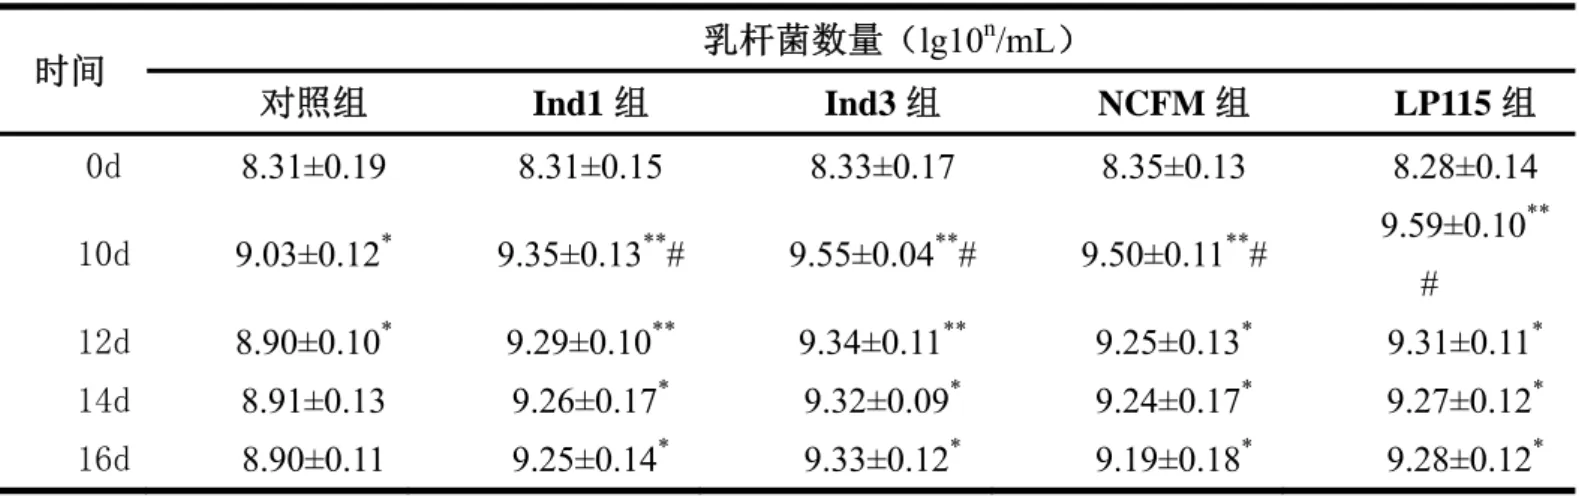 表 5.2  小鼠肠道中乳杆菌数量变化（lg10 n /mL） 